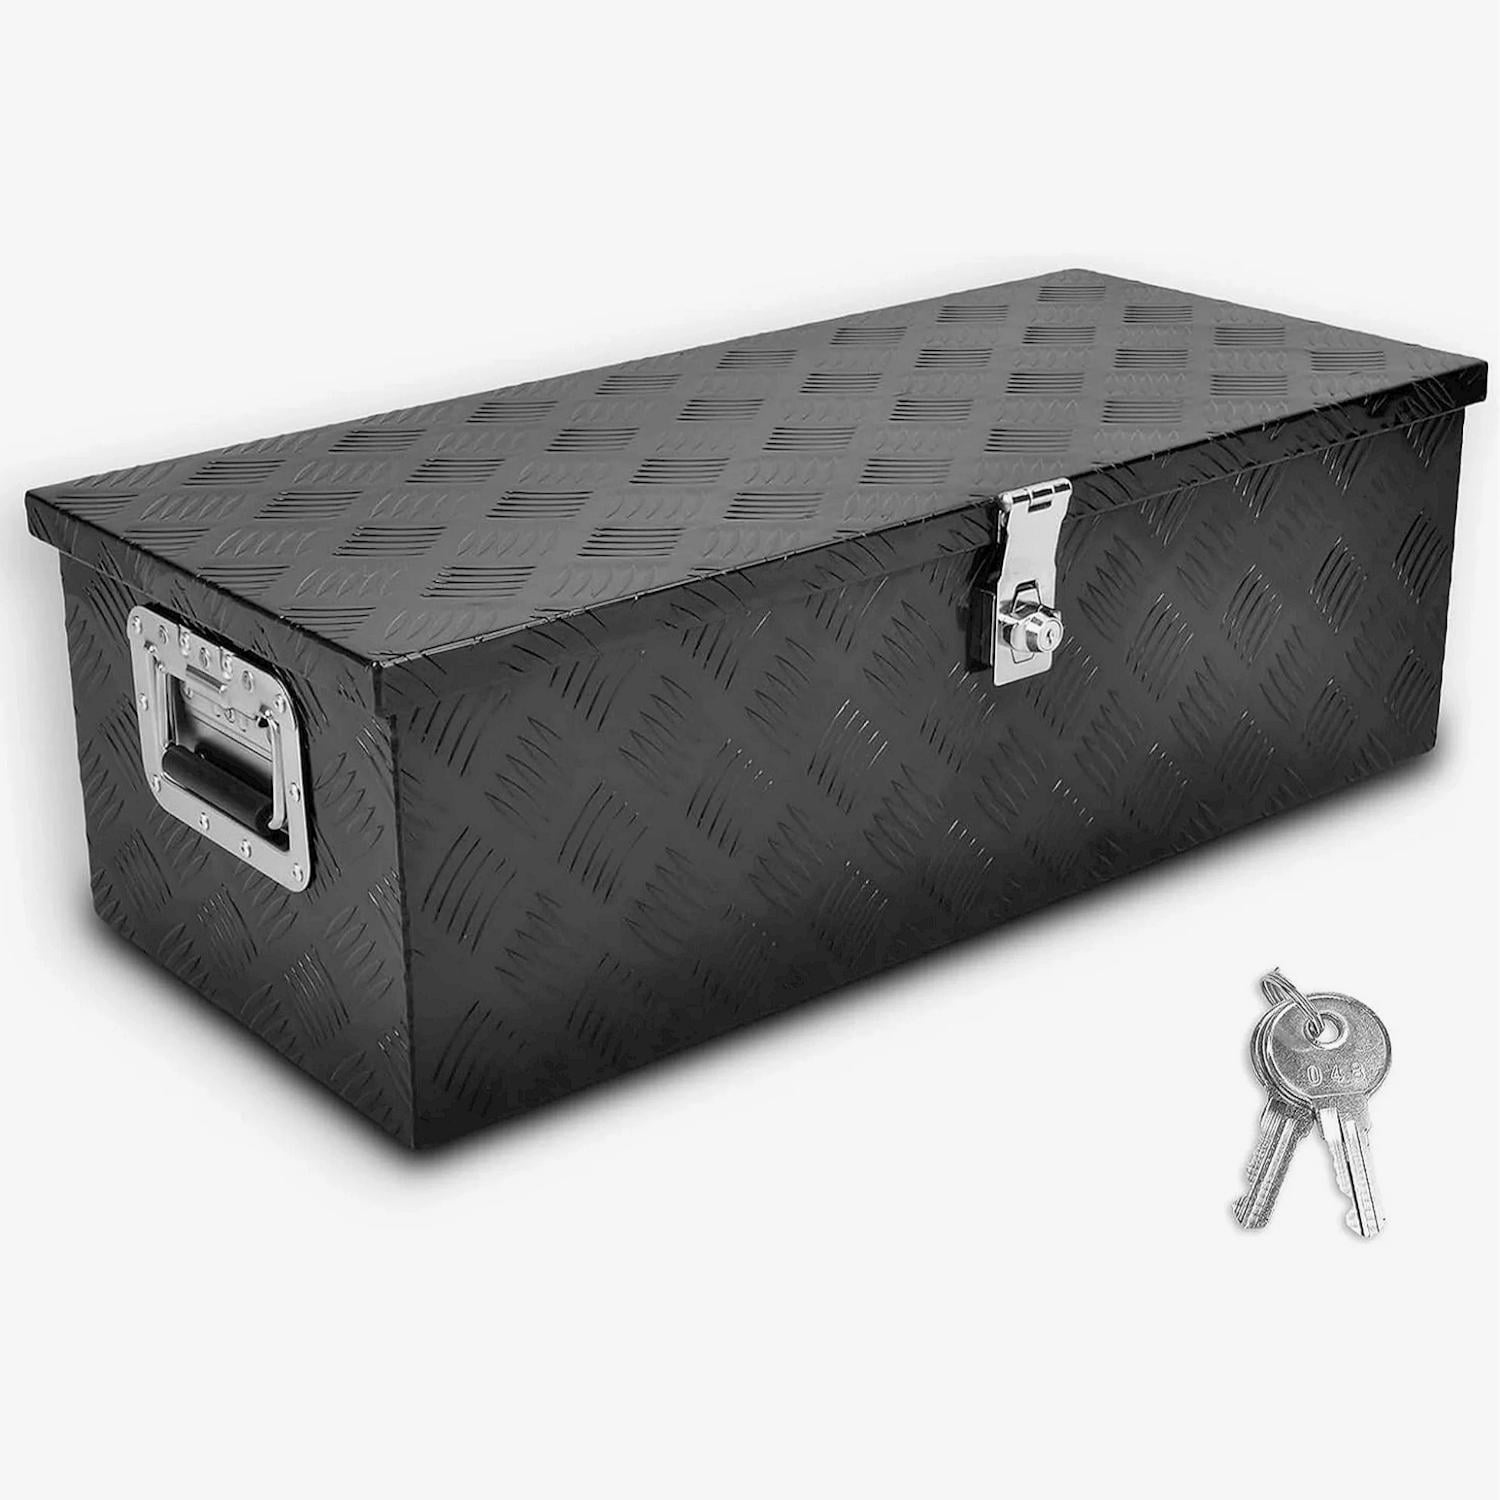 48X15X15 BLACK ALUMINUM PICKUP TRUCK TRUNK BED TOOL BOX TRAILER  STORAGE+LOCK